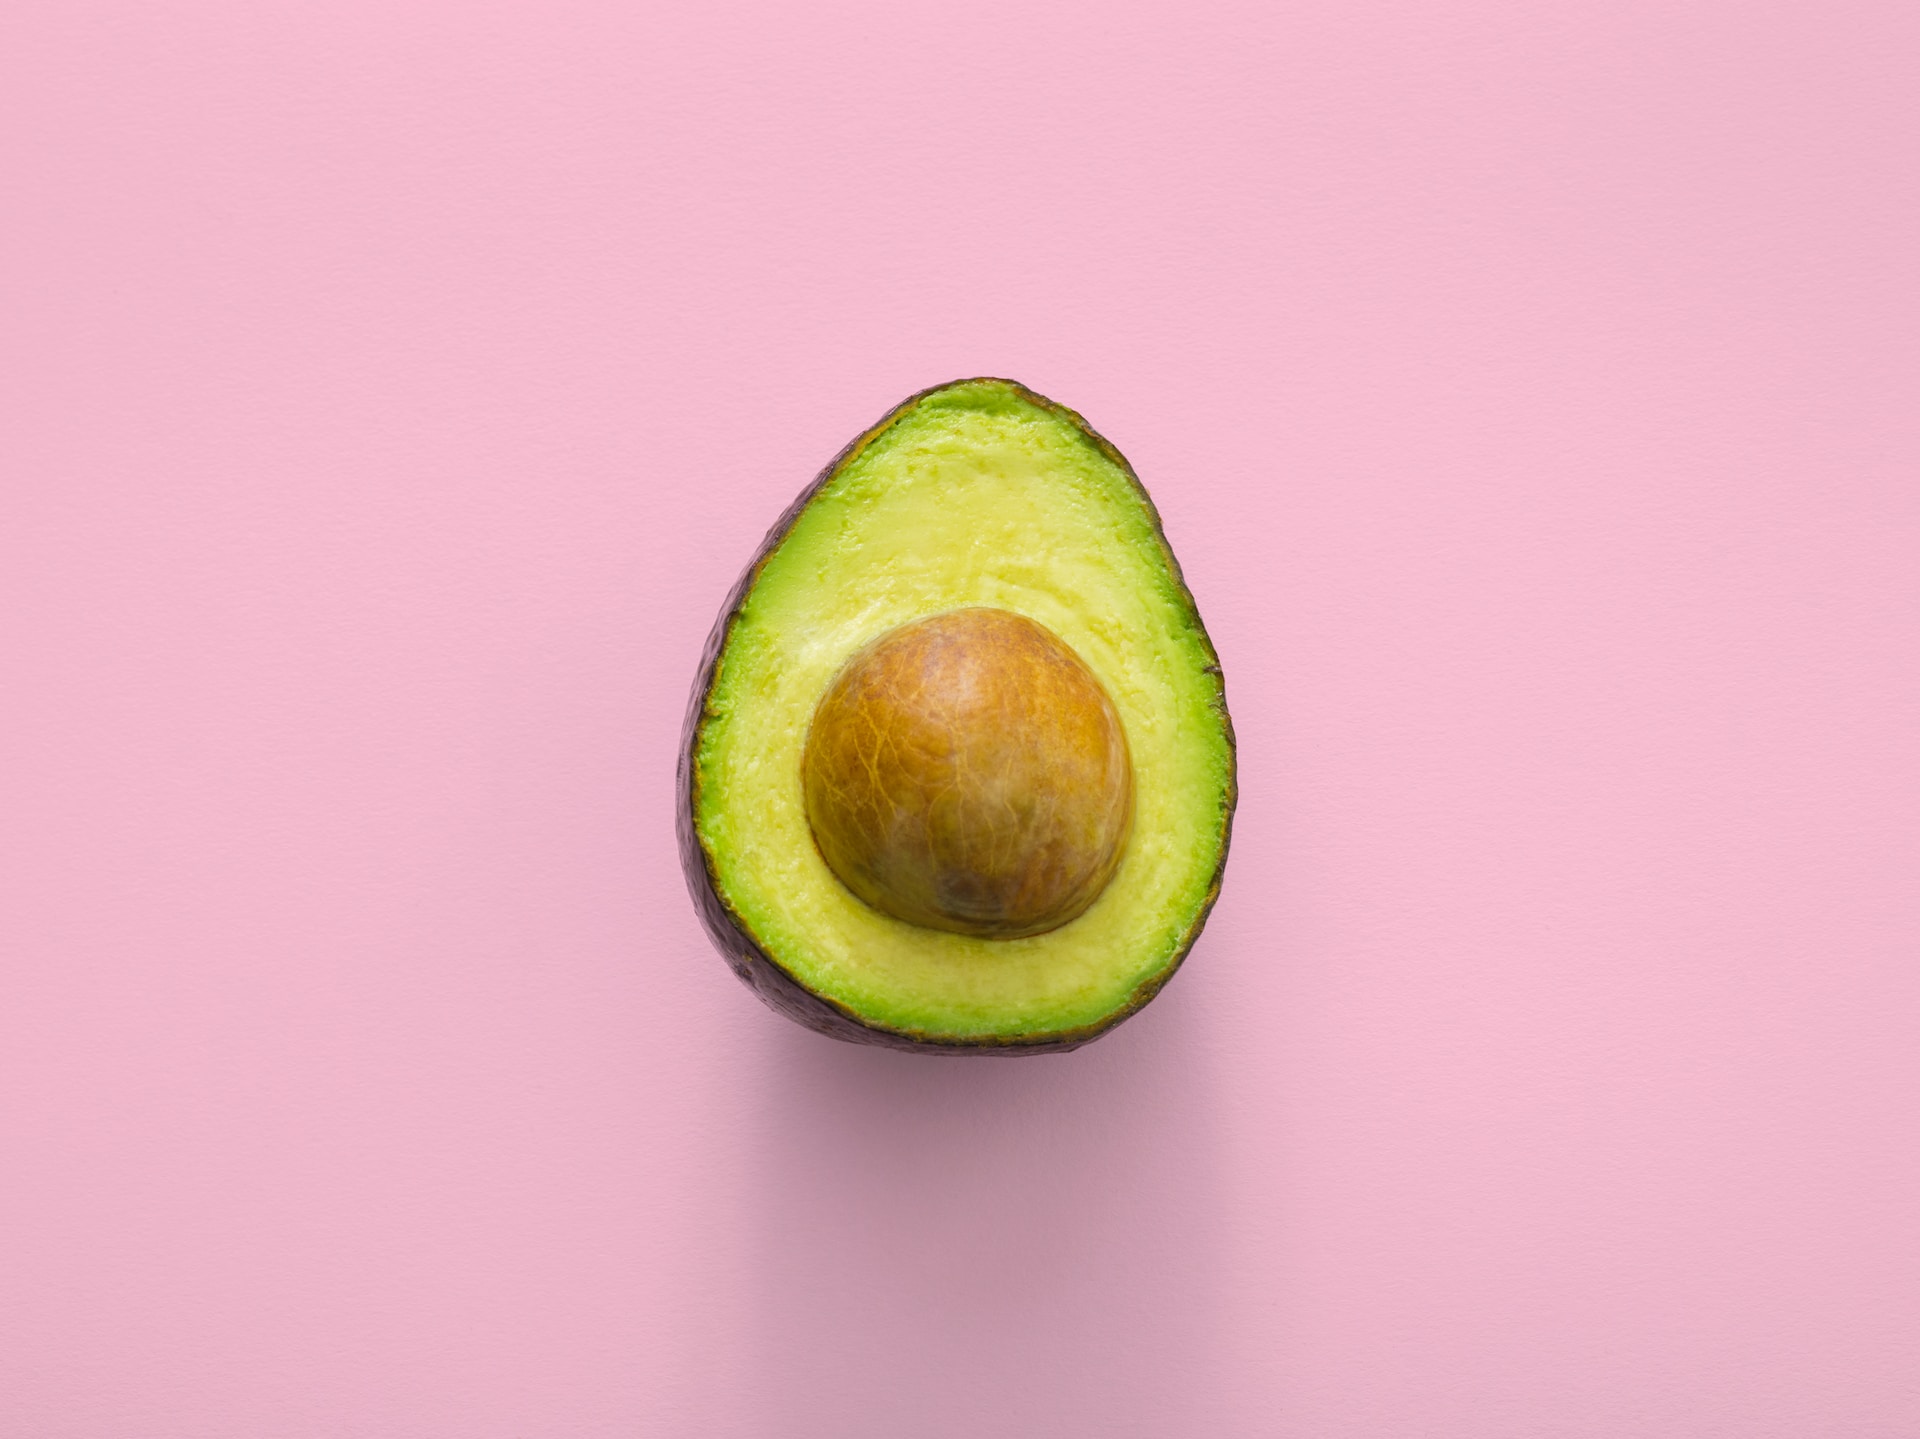 Gesundheitliche Vorteile von Avocado-Öl - was Sie darüber wissen sollten